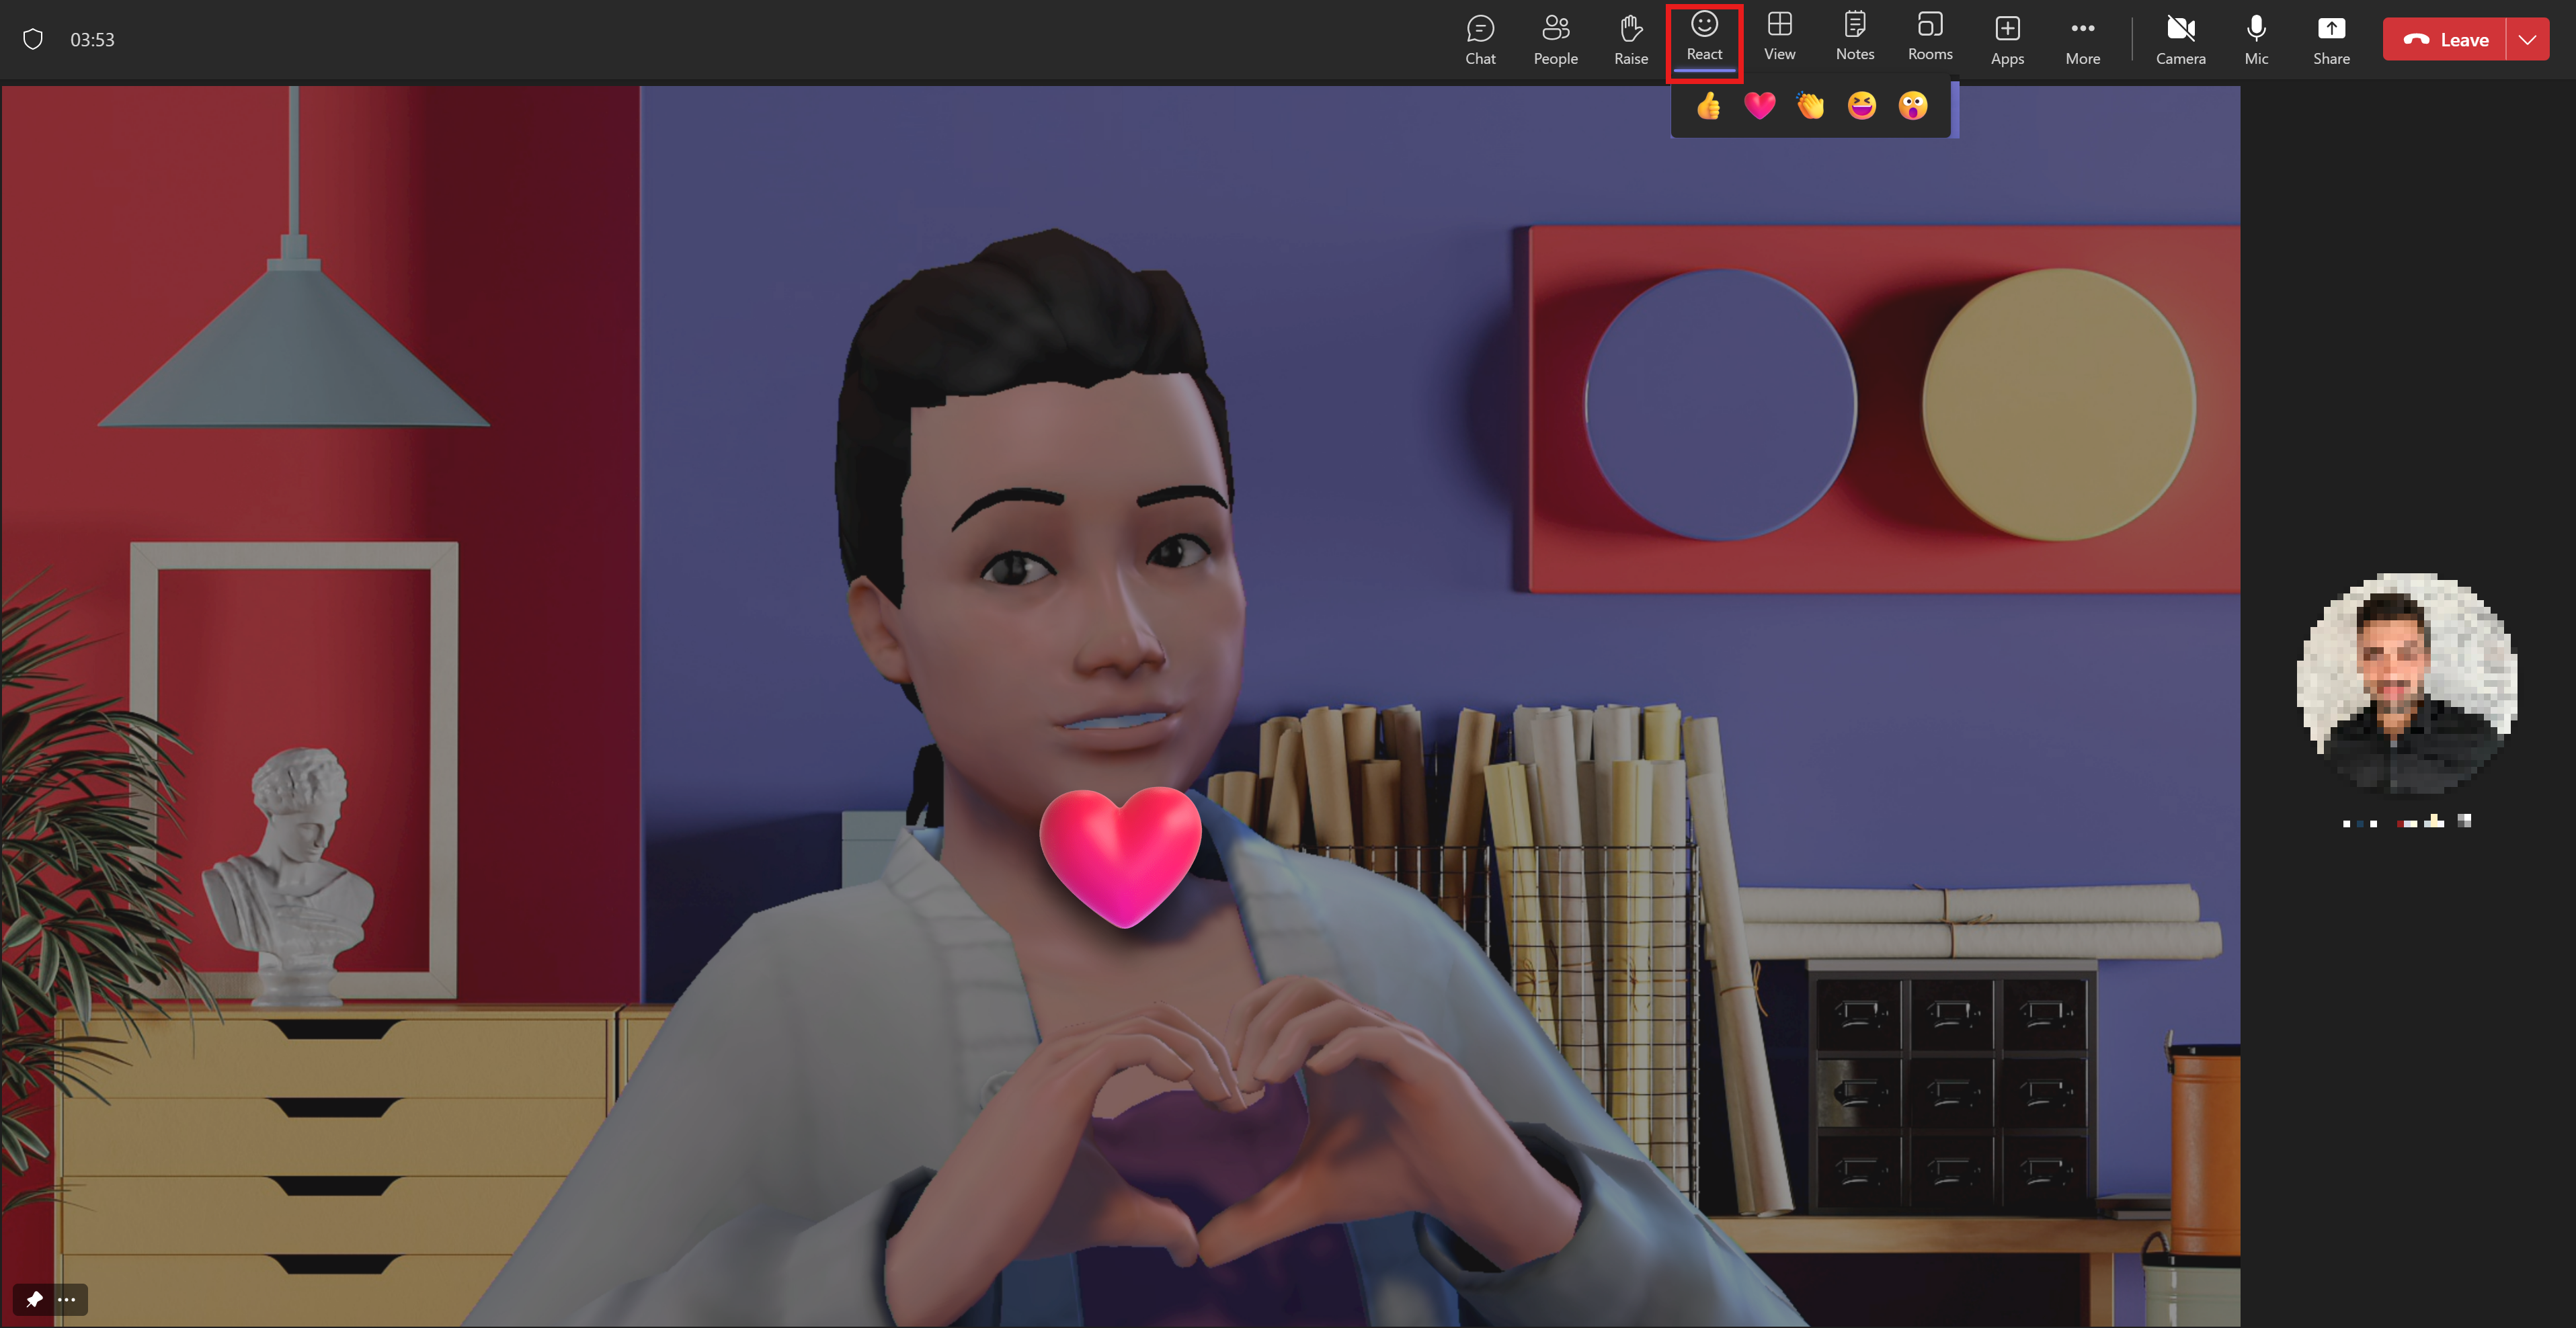 Egy avatar megmutatja a szeretetét azáltal, hogy szívet a kezével